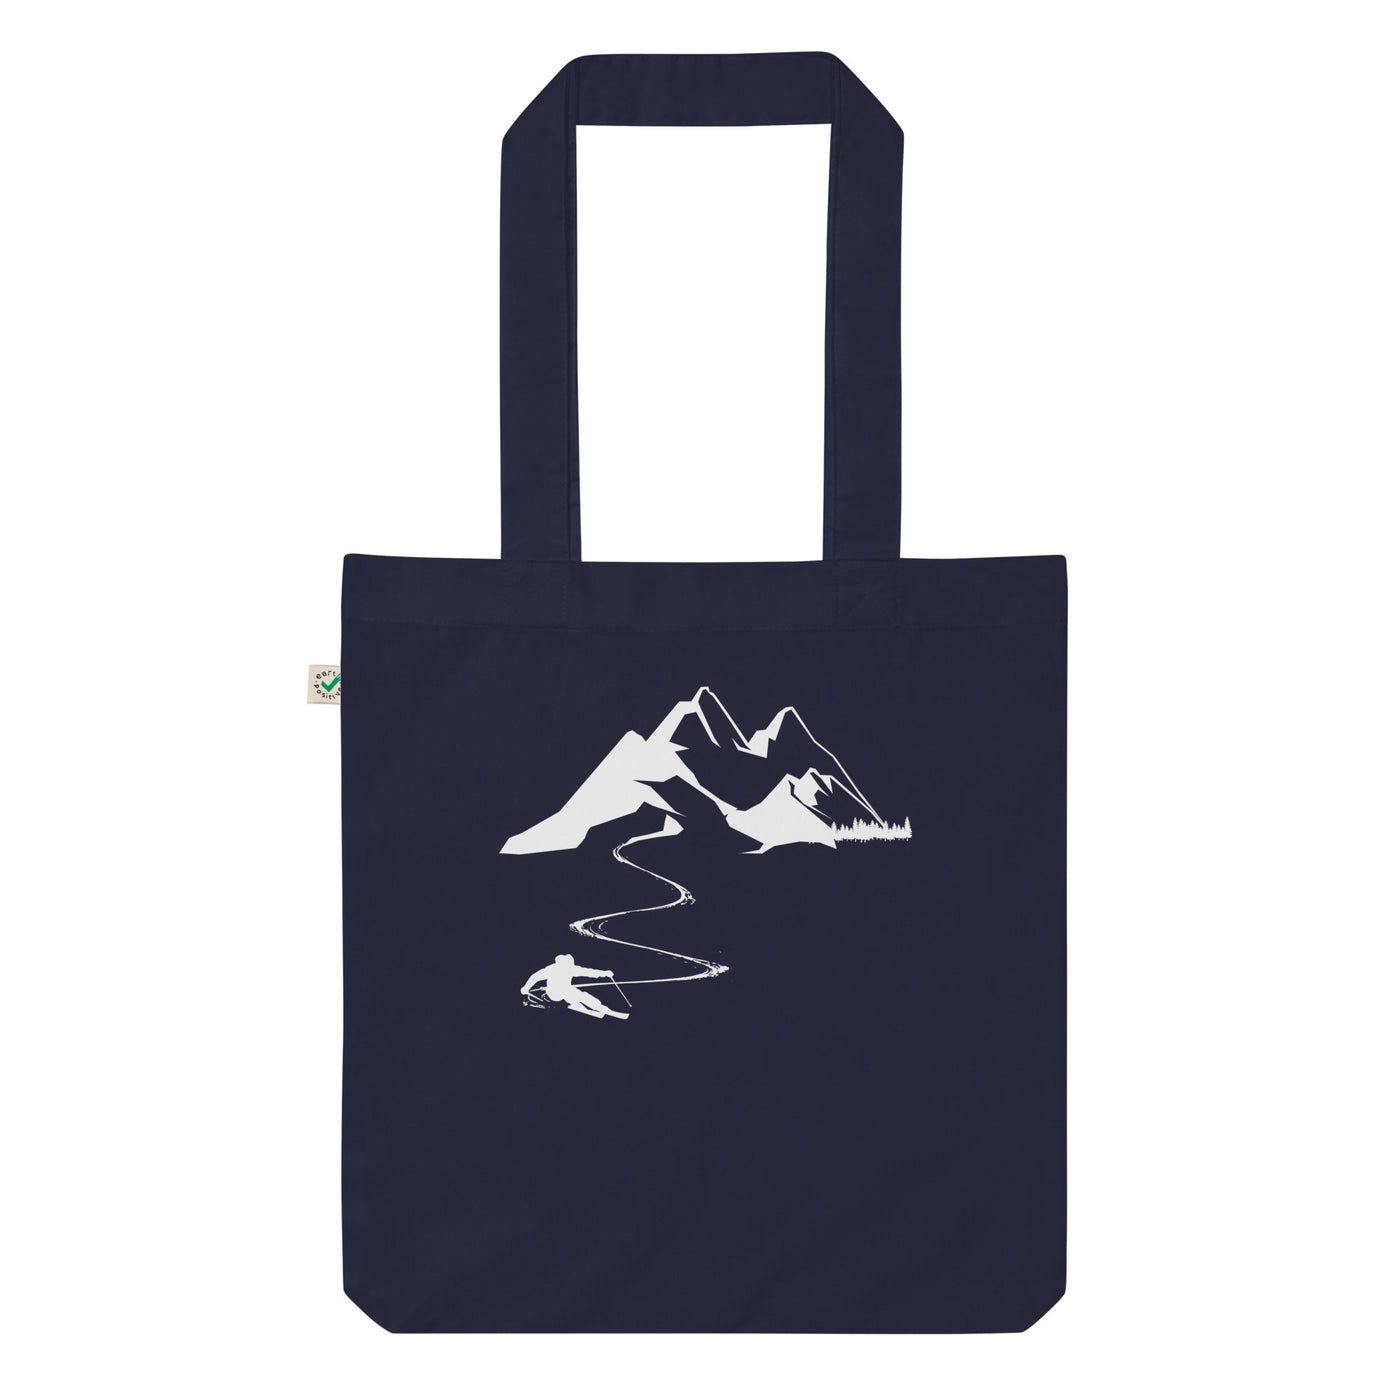 Skisüchtig - Organic Einkaufstasche klettern ski Navy